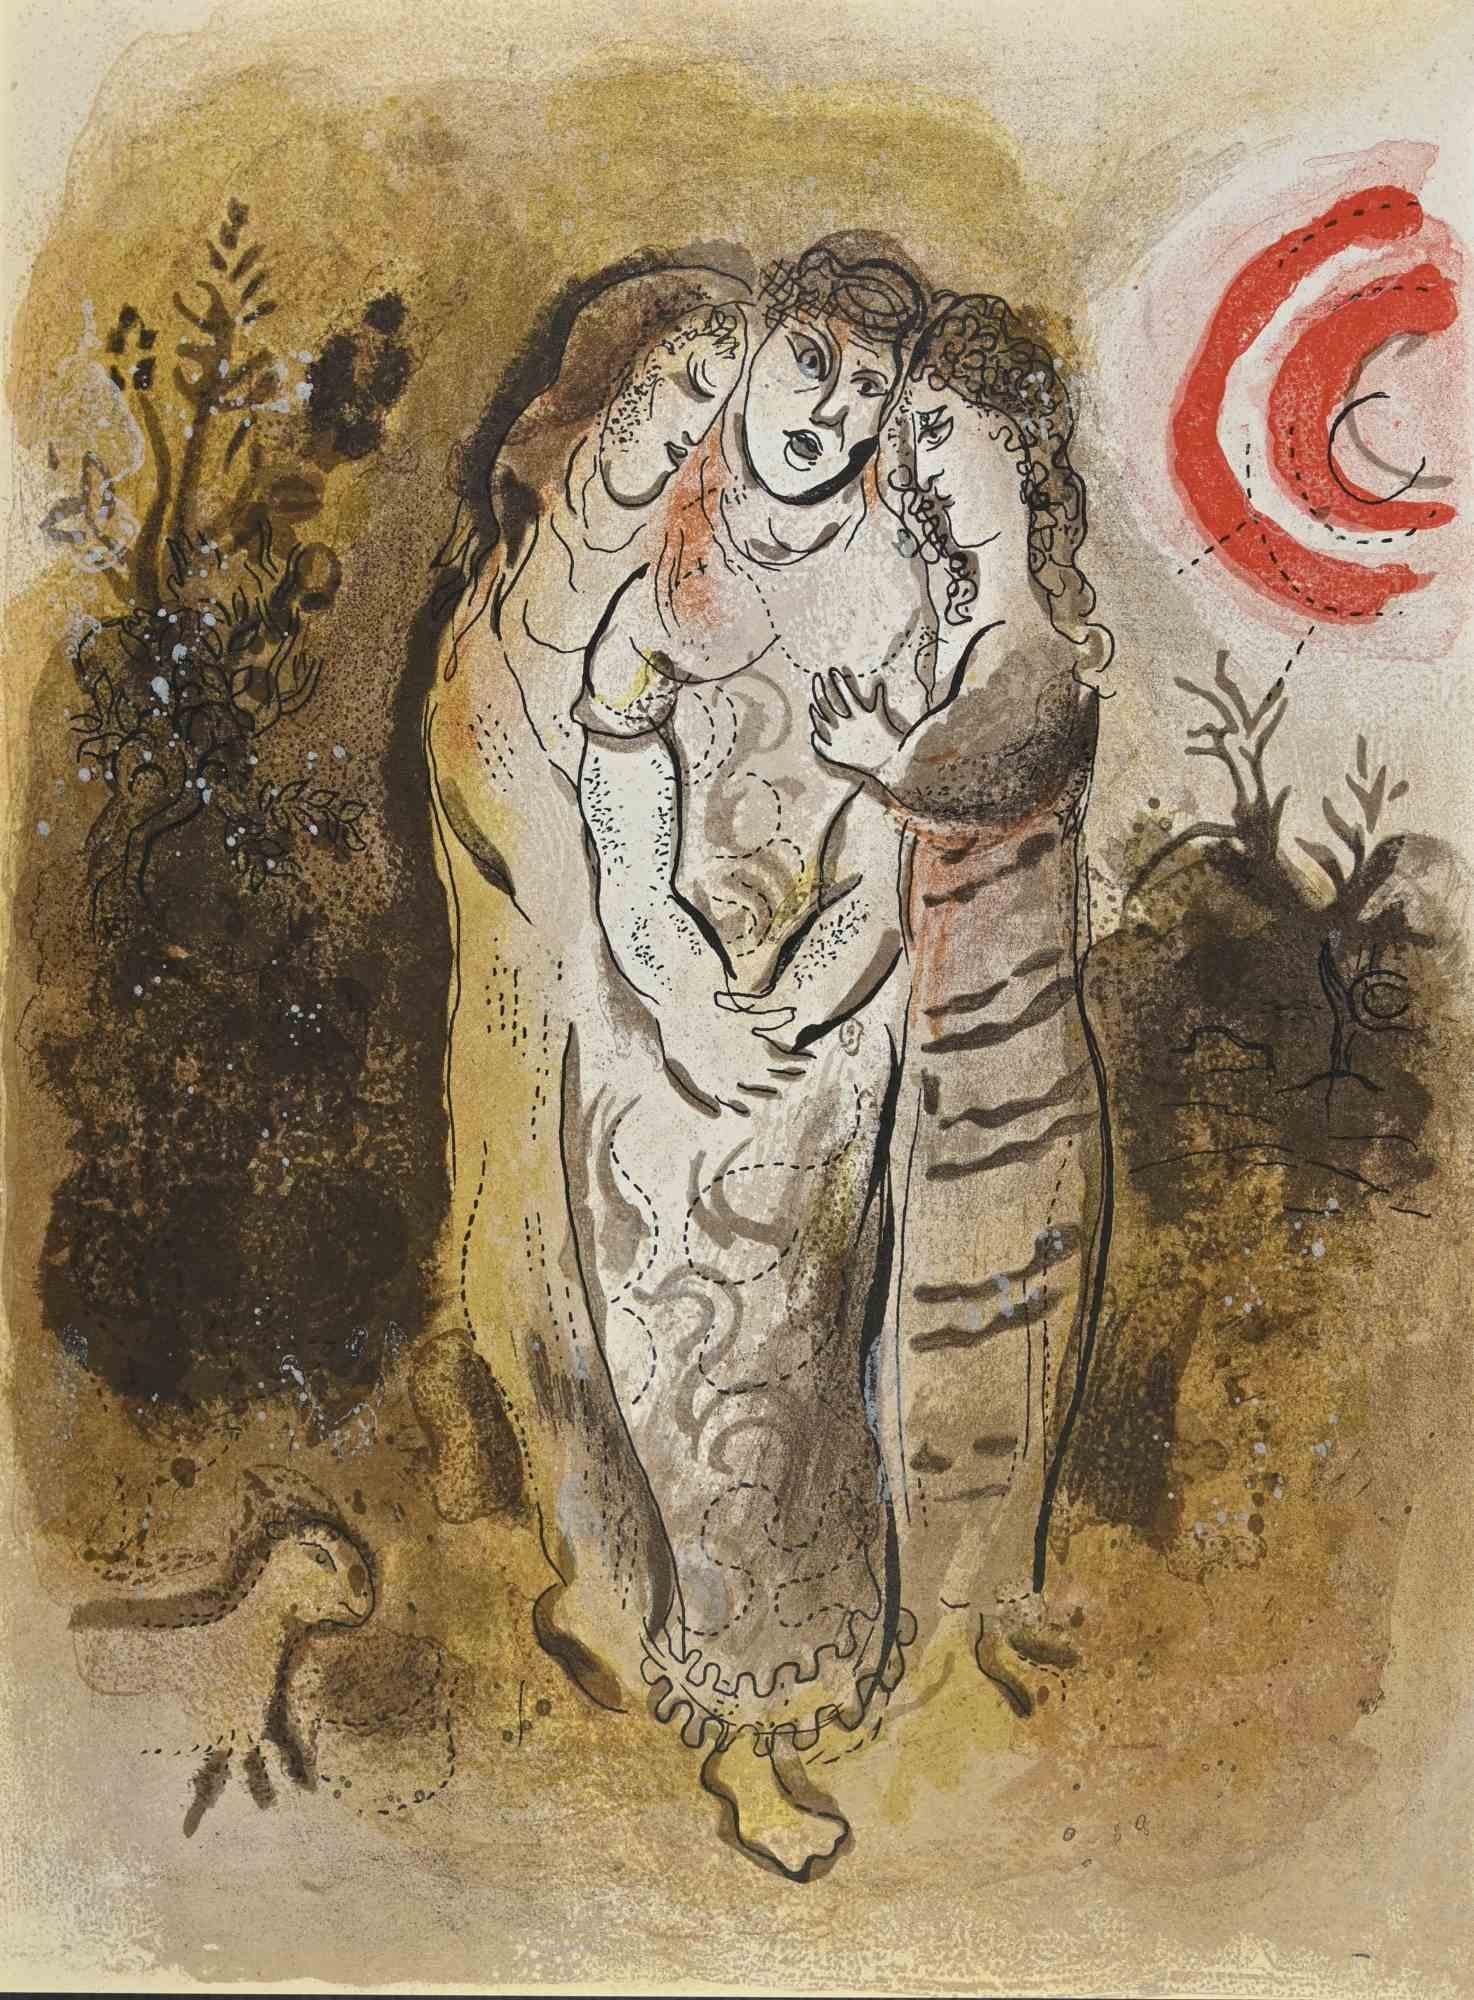 Naomi und ihre Töchter ist ein Kunstwerk aus der Serie "Die Bibel", die Marc Chagall 1960 realisierte.

Farblithografie auf braunem Papier, ohne Signatur.

Auflage von 6500 unsignierten Lithografien. Gedruckt von Mourlot und veröffentlicht von